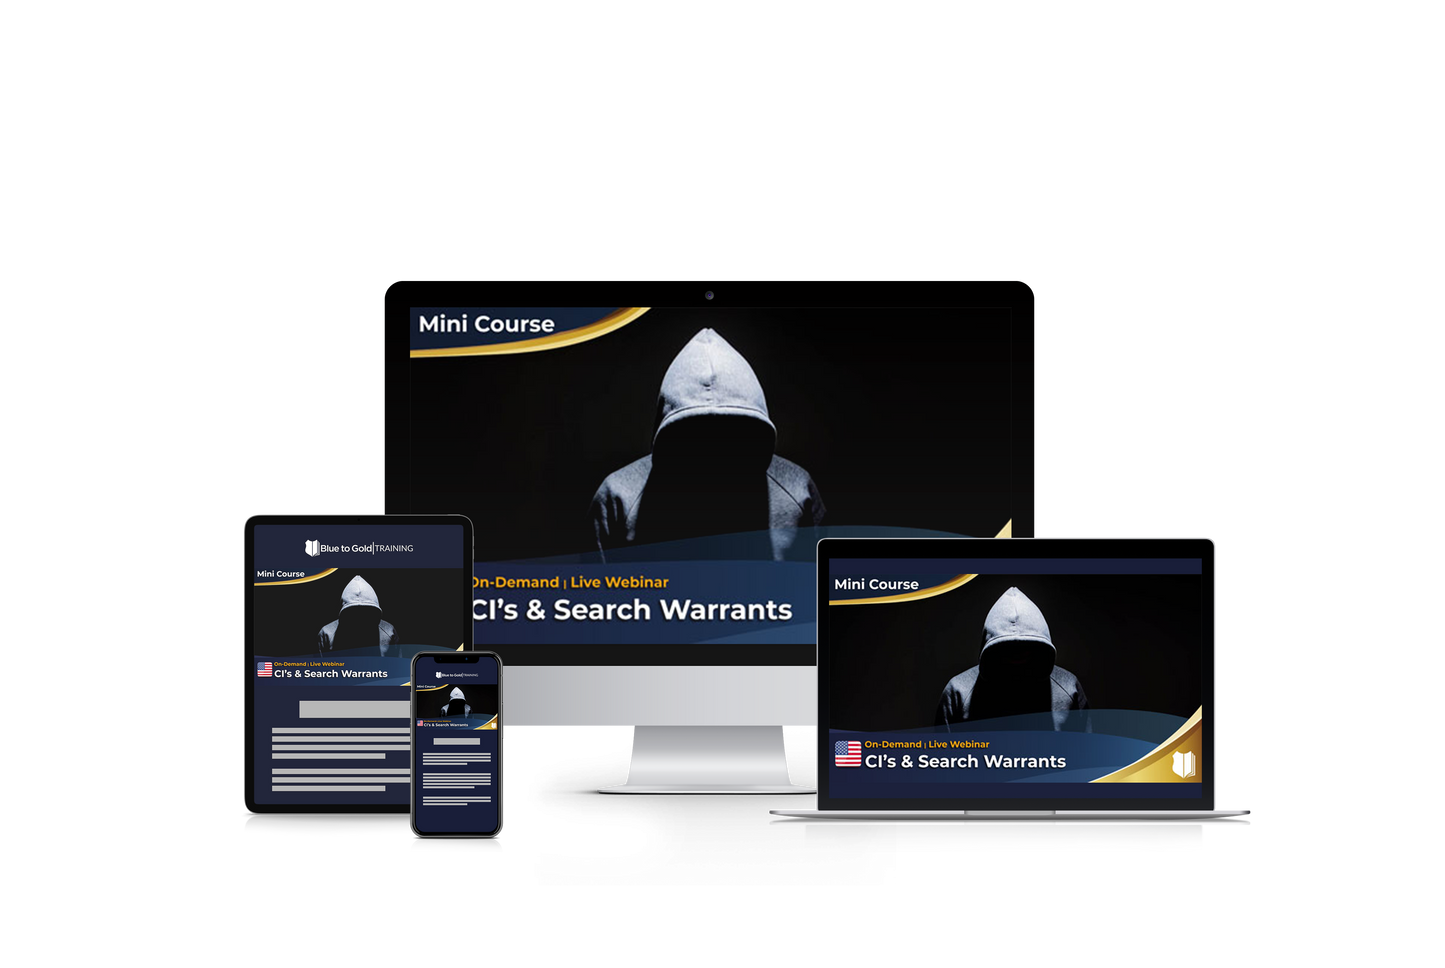 CI's & Search Warrants Downloads